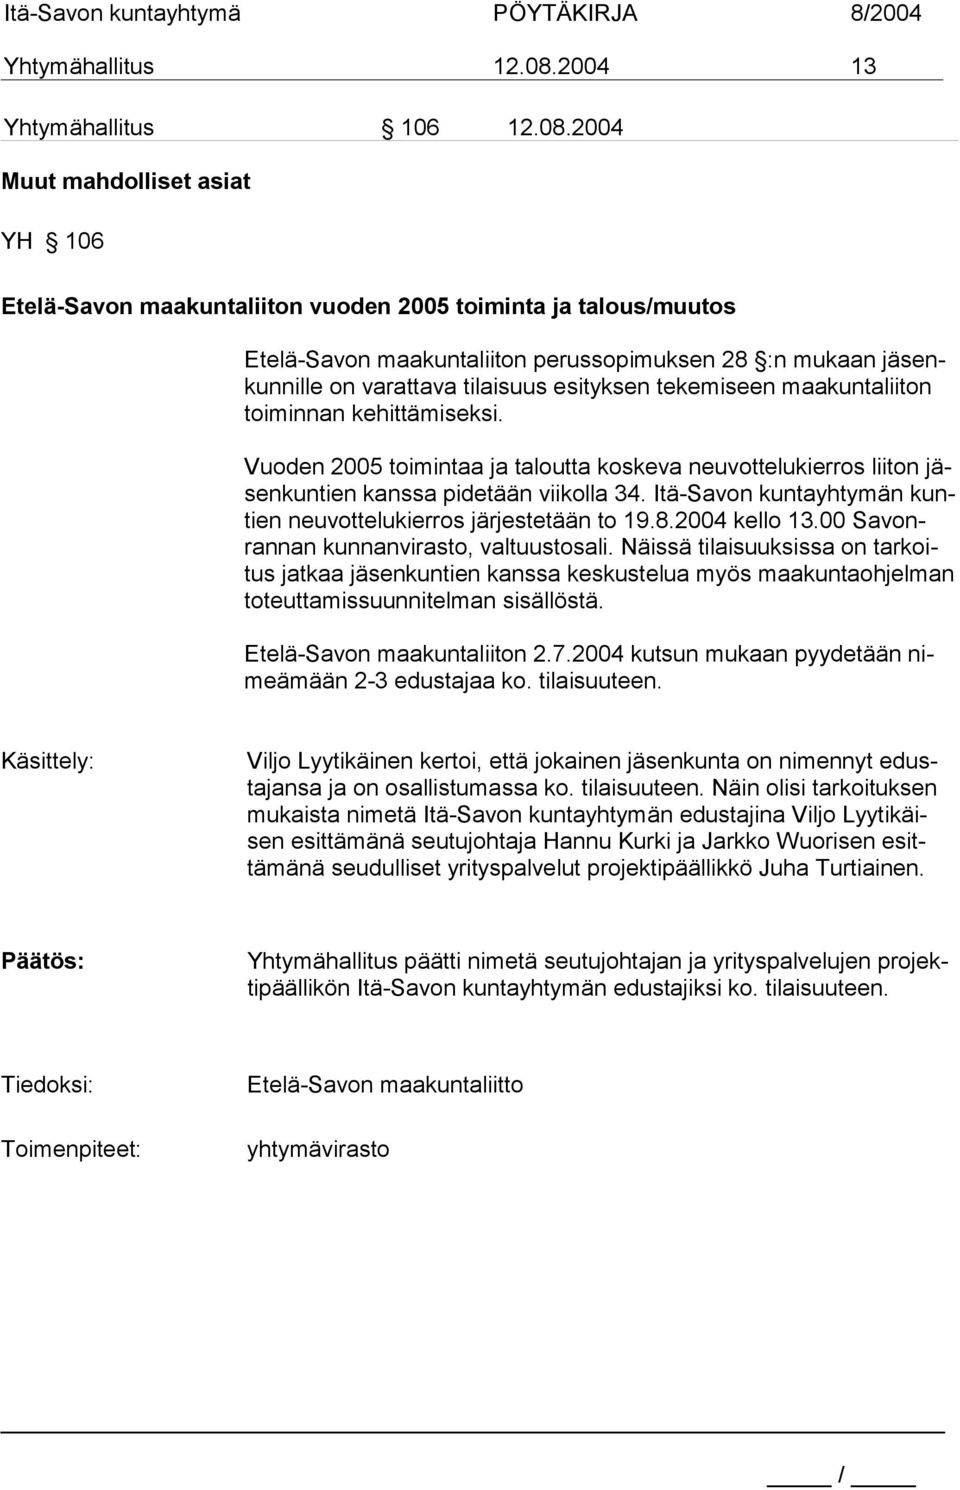 2004 Muut mahdolliset asiat YH 106 Etelä-Savon maakuntaliiton vuoden 2005 toiminta ja talous/muutos Etelä-Savon maakuntaliiton perussopimuksen 28 :n mukaan jäsenkunnille on varattava tilaisuus